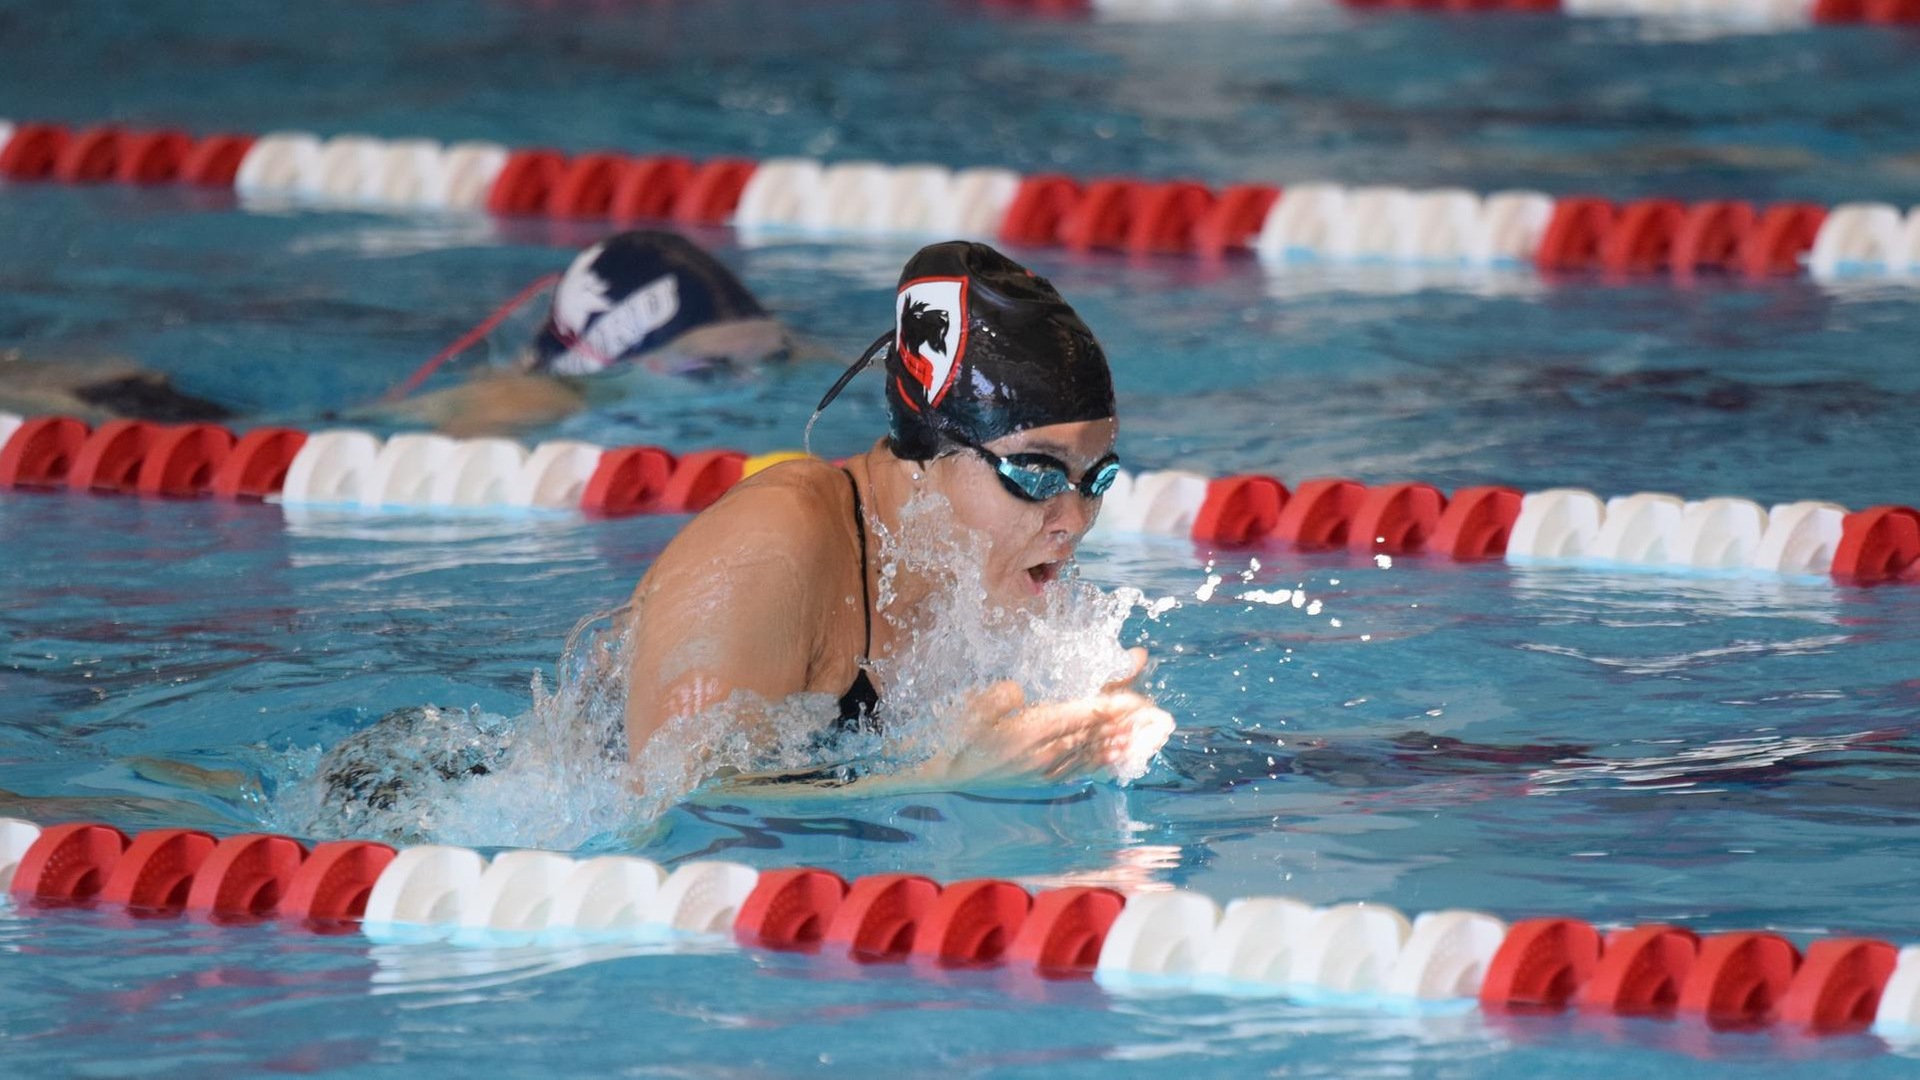 women's swimmer in breaststroke motion